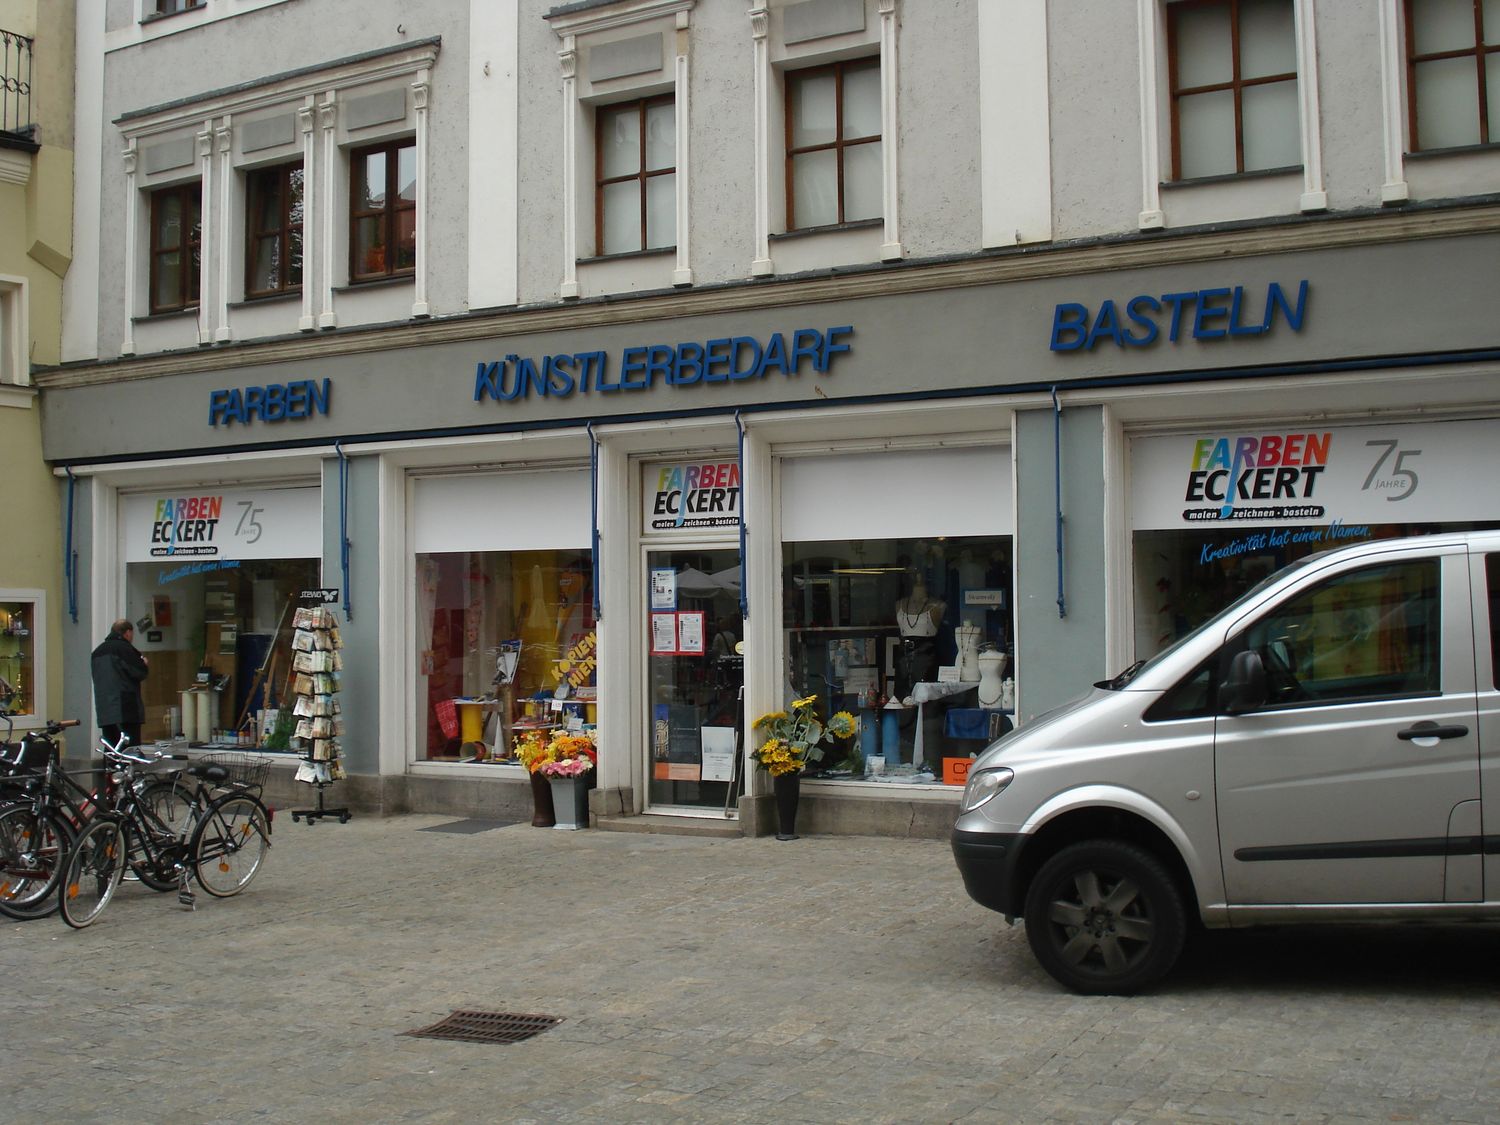 Eckert Farben, Malen, Zeichnen, Basteln - 4 Bewertungen - Regensburg  Innenstadt - Kohlenmarkt | golocal